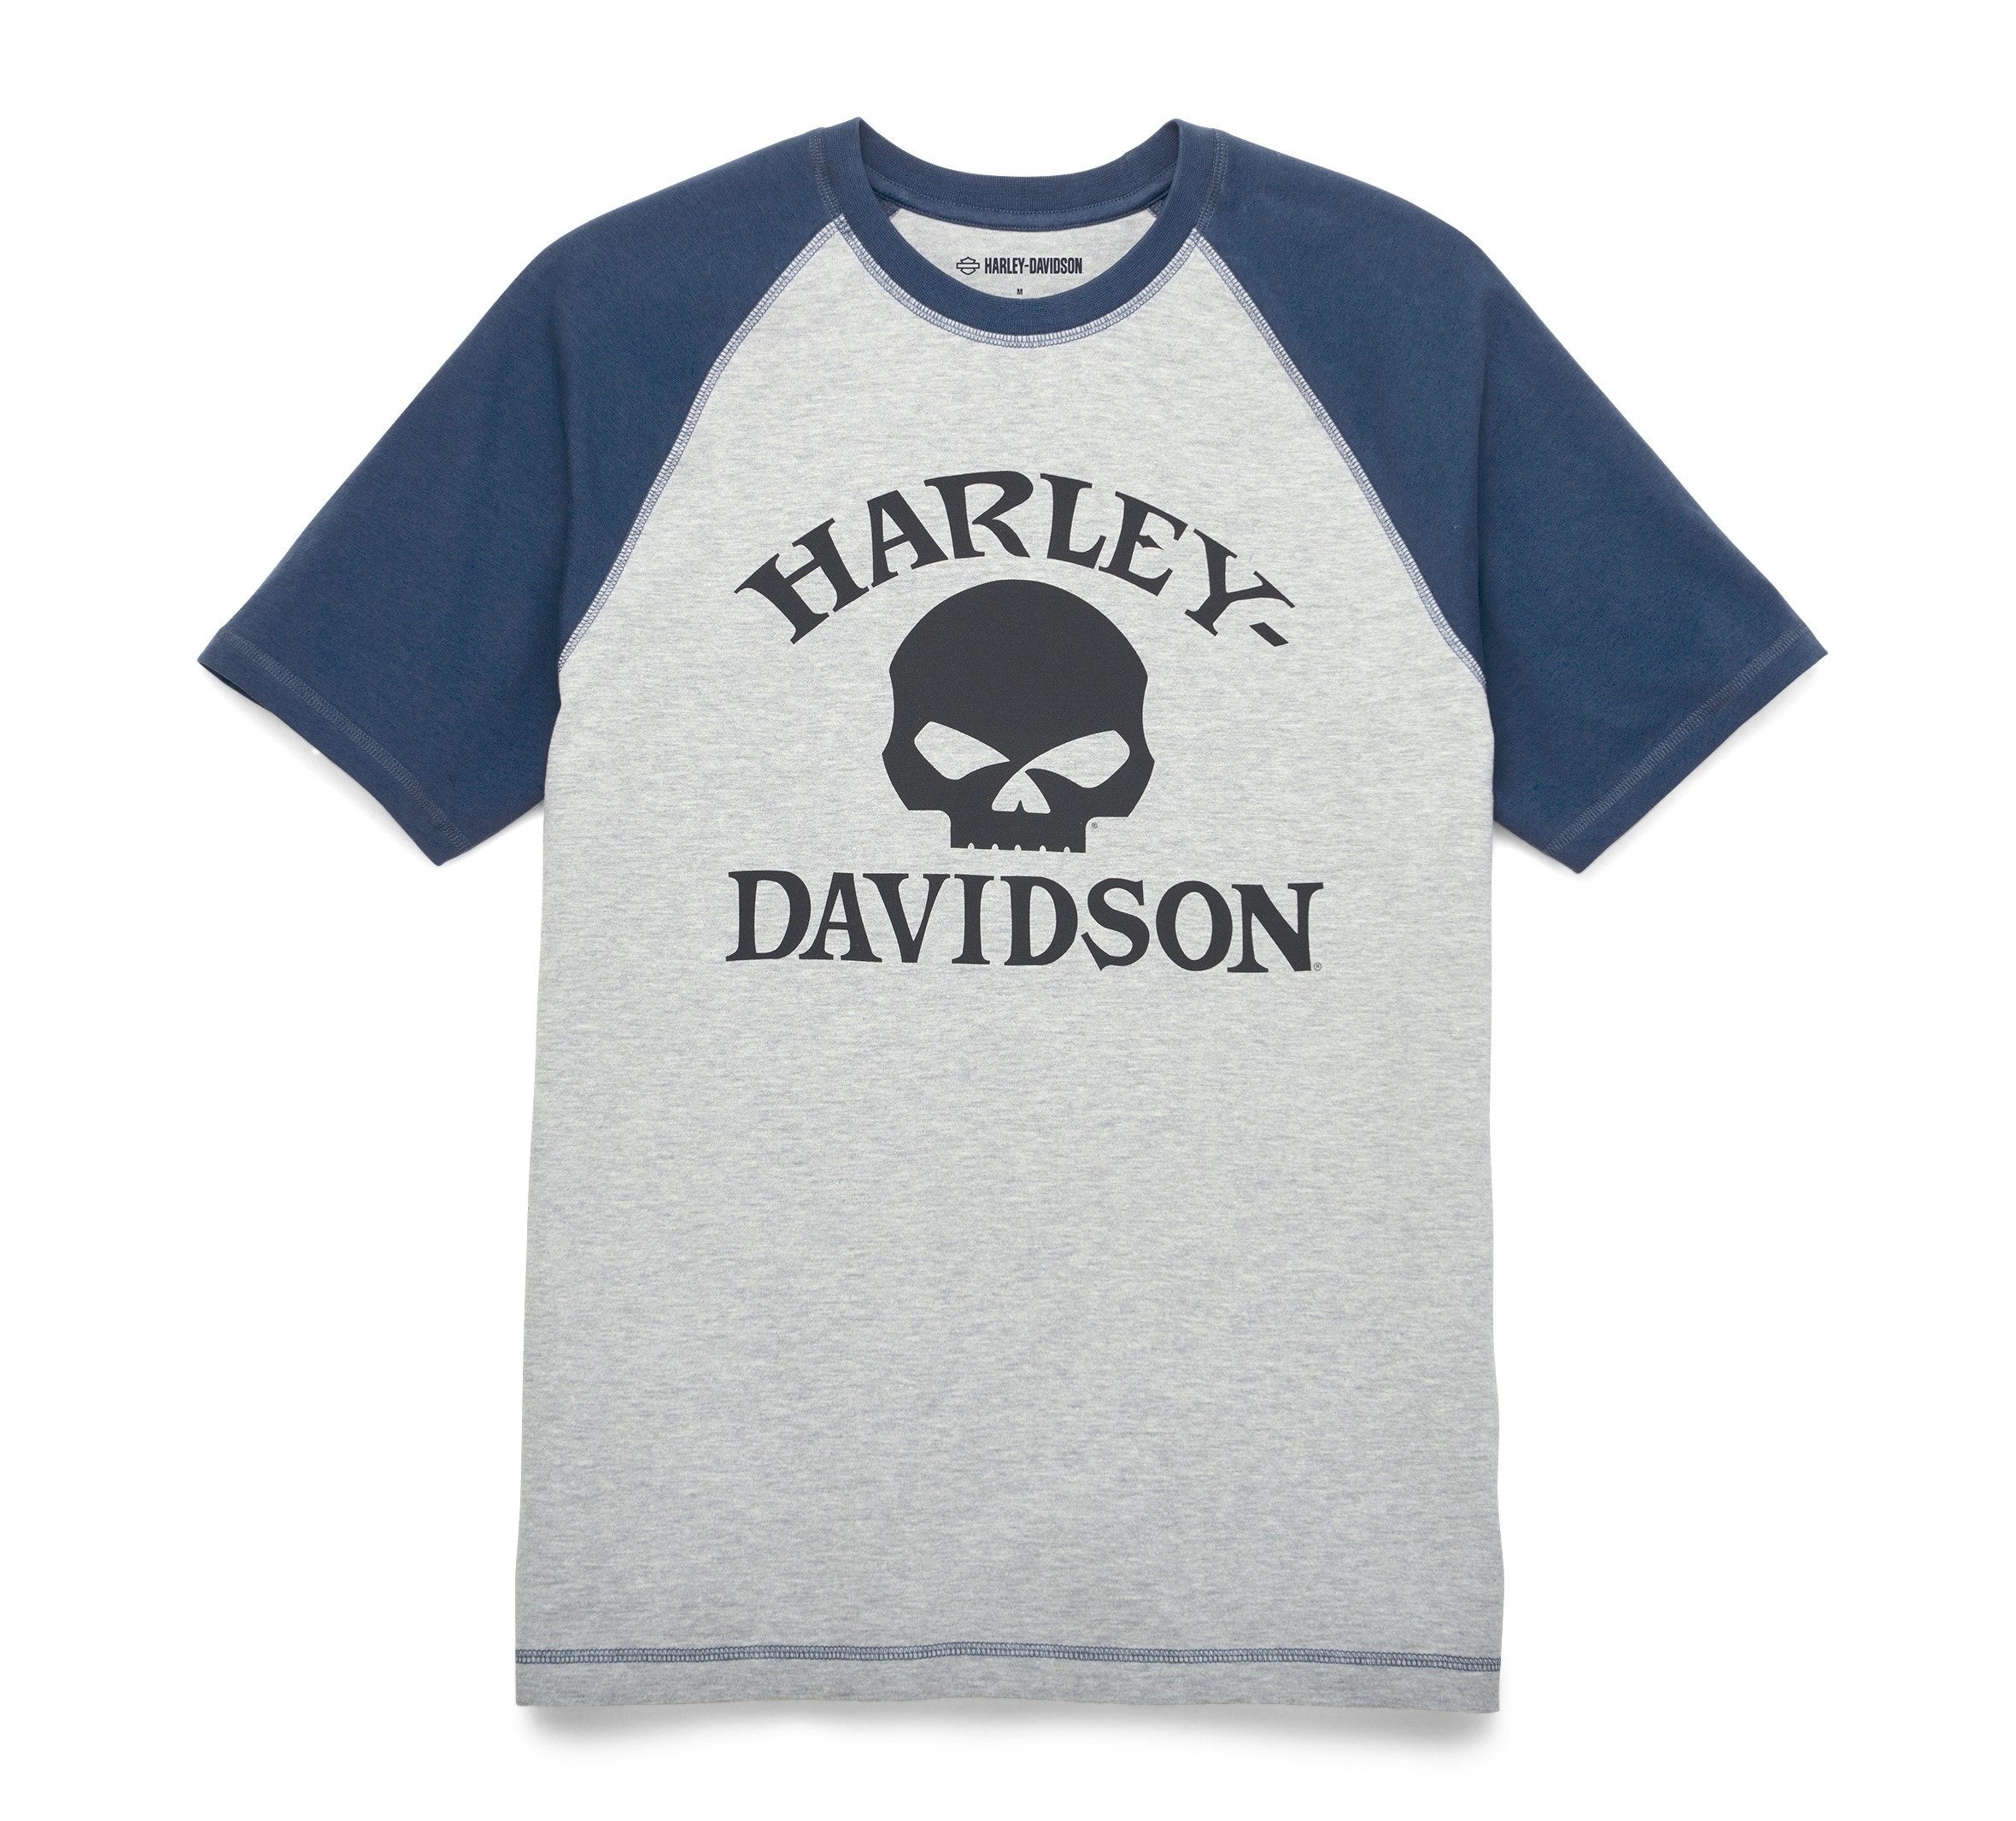 Harley Davidson Mens Freedom Made Short Sleeve T-Shirt Black 402906780